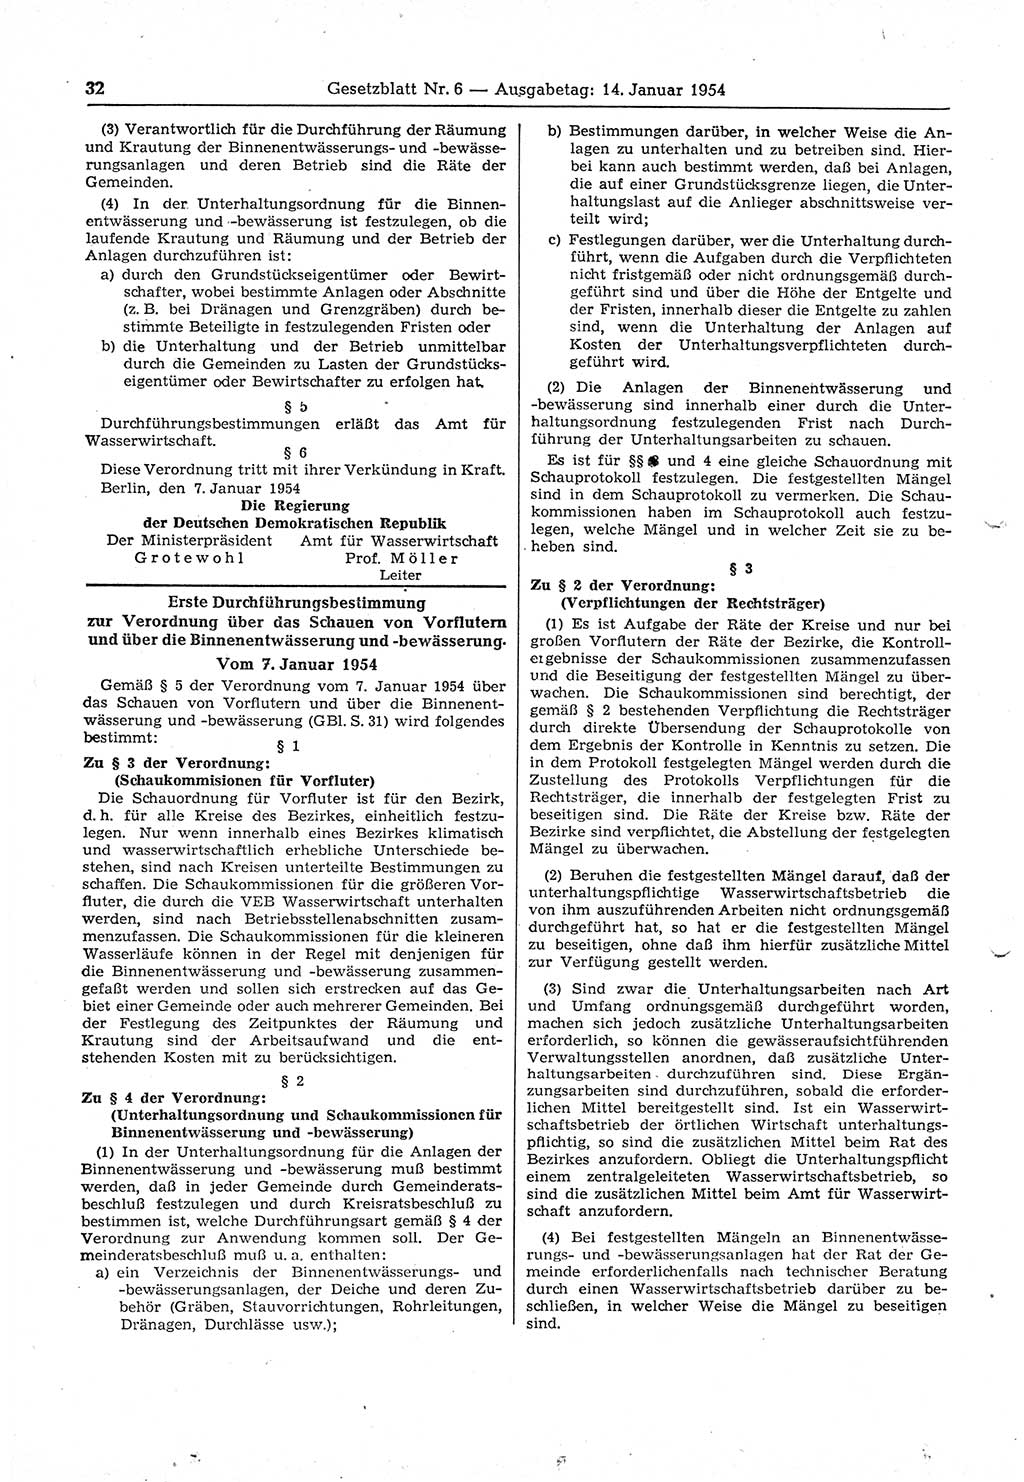 Gesetzblatt (GBl.) der Deutschen Demokratischen Republik (DDR) 1954, Seite 32 (GBl. DDR 1954, S. 32)